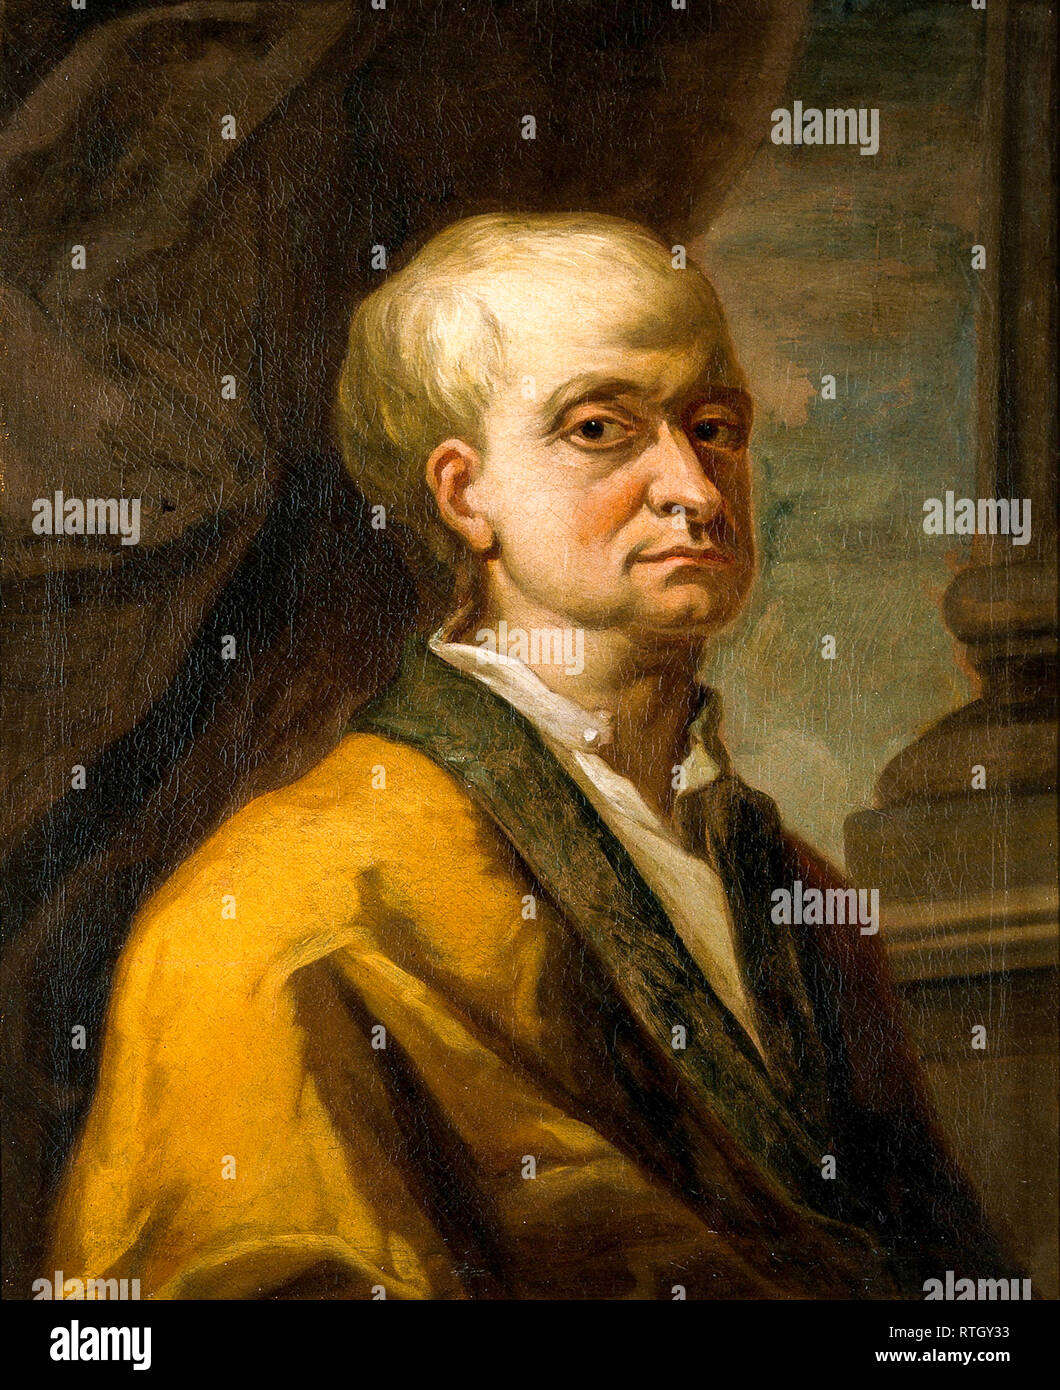 Sir Isaac Newton (1642-1727), peinture de portrait, 17th-18th siècle Banque D'Images